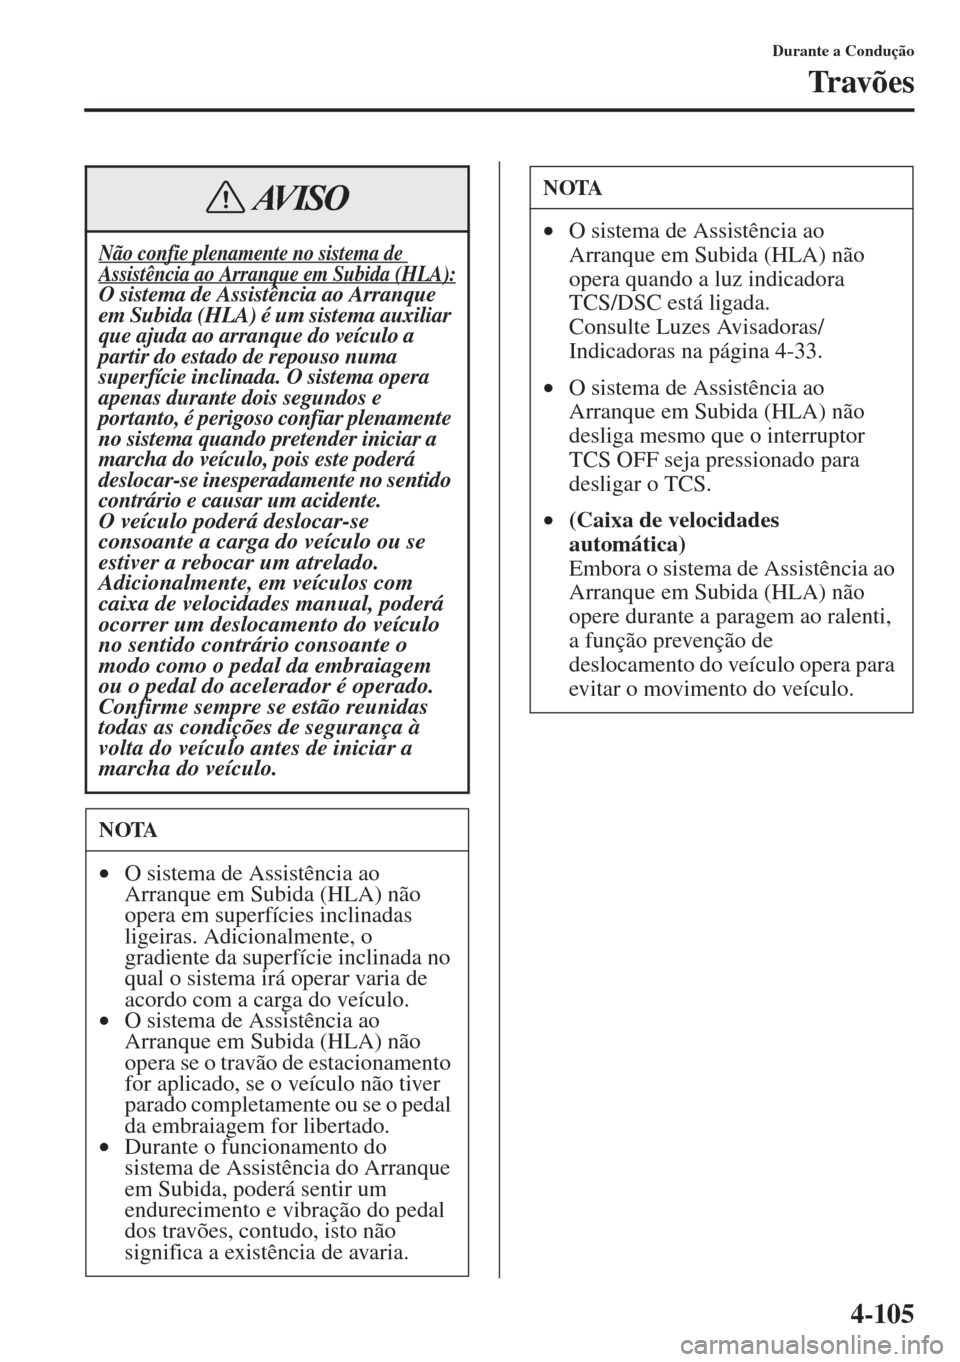 MAZDA MODEL CX-5 2015  Manual do proprietário (in Portuguese) 4-105
Durante a Condução
Tr av õ e s
Não confie plenamente no sistema de Assistência ao Arranque em Subida (HLA):O sistema de Assistência ao Arranque 
em Subida (HLA) é um sistema auxiliar 
que